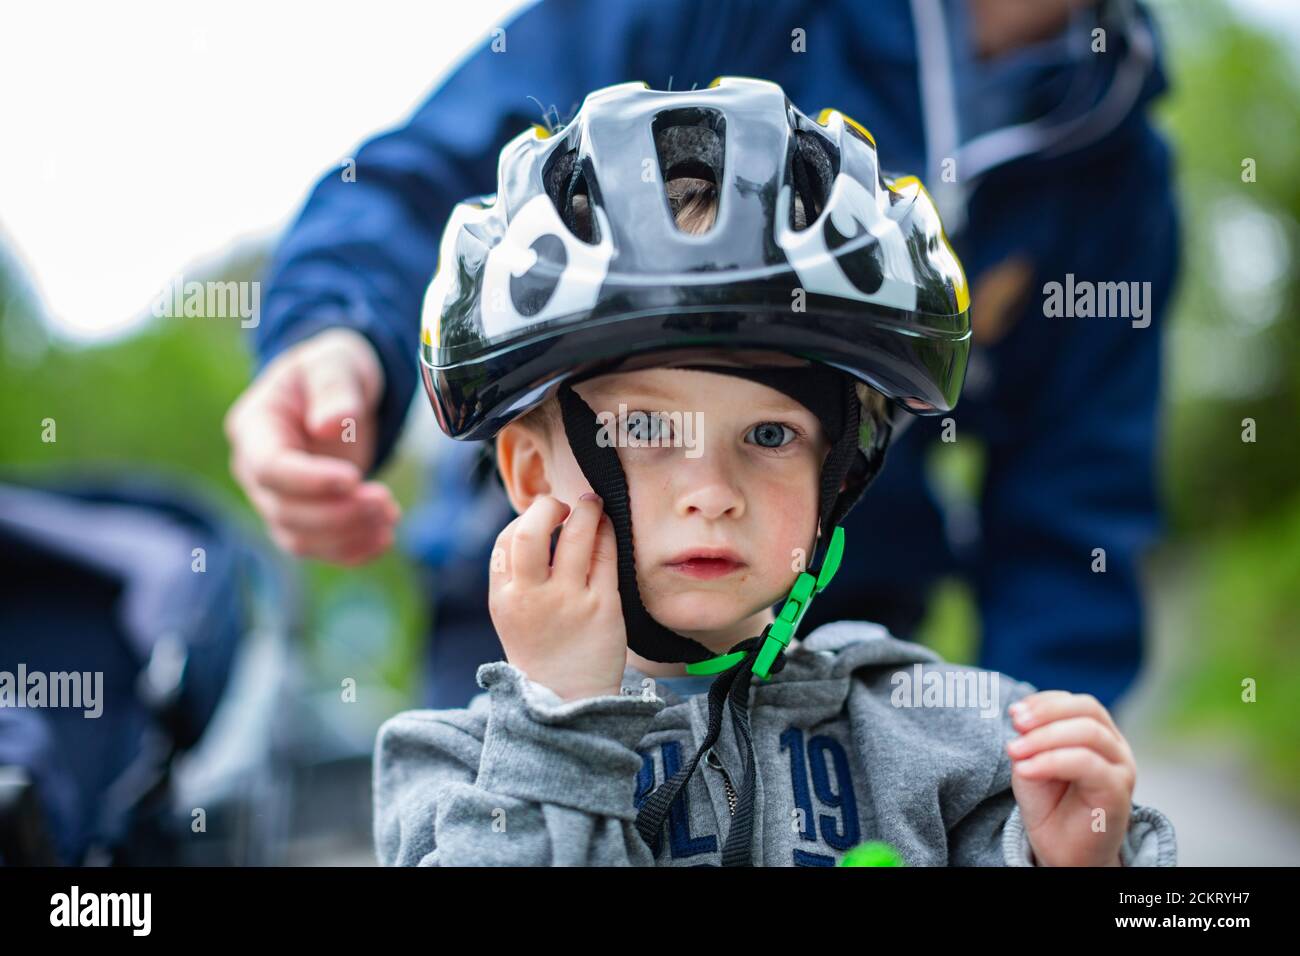 jeune garçon avec un grand casque de vélo, les papas se penchent la main pour ajuster la sangle Banque D'Images